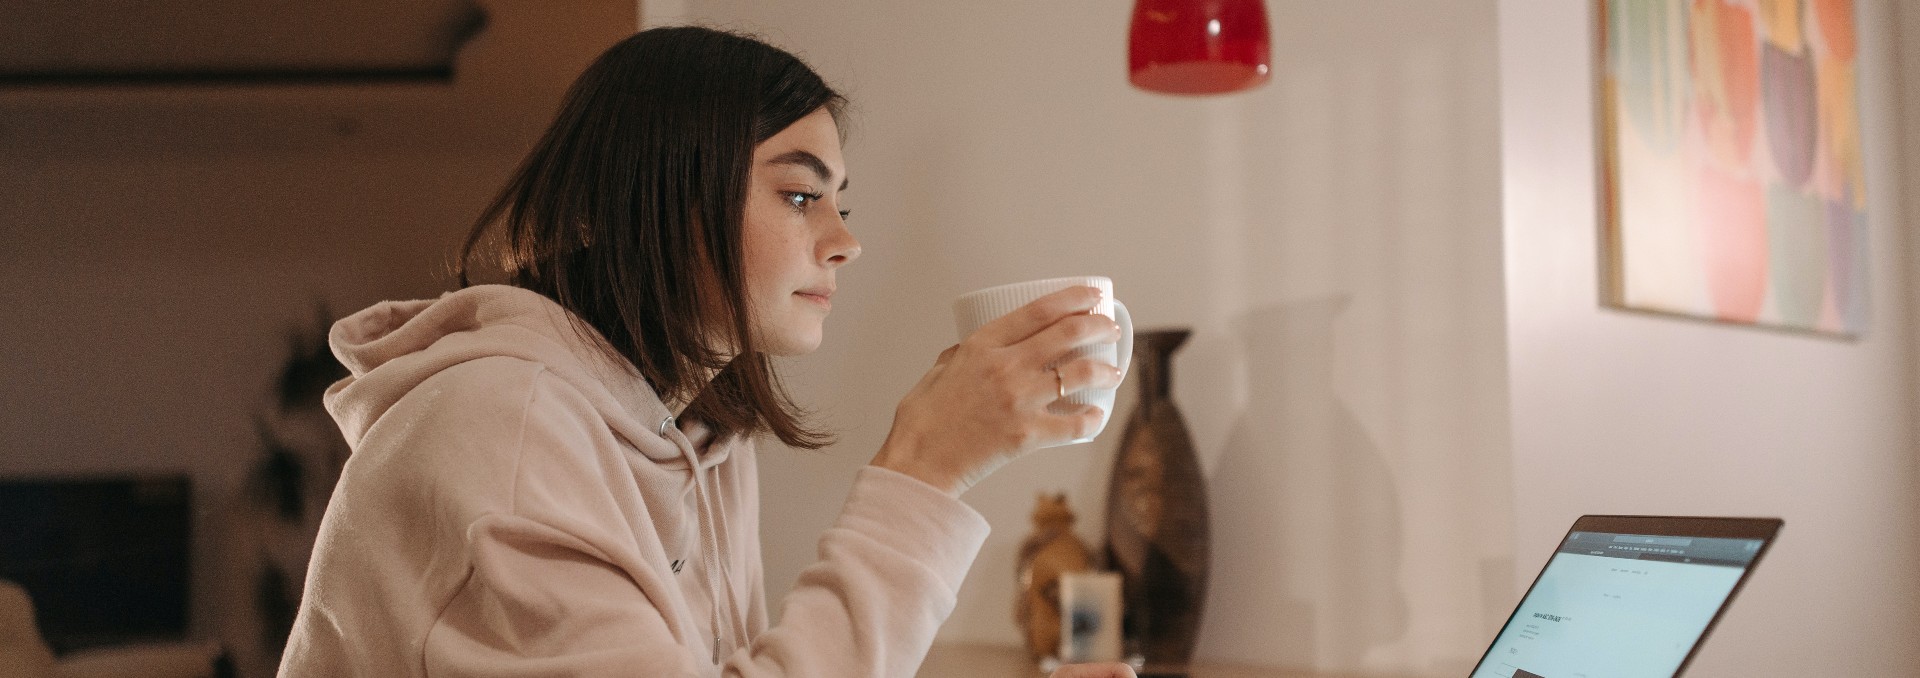 Foto de mujer tomando una taza de café frente al computador